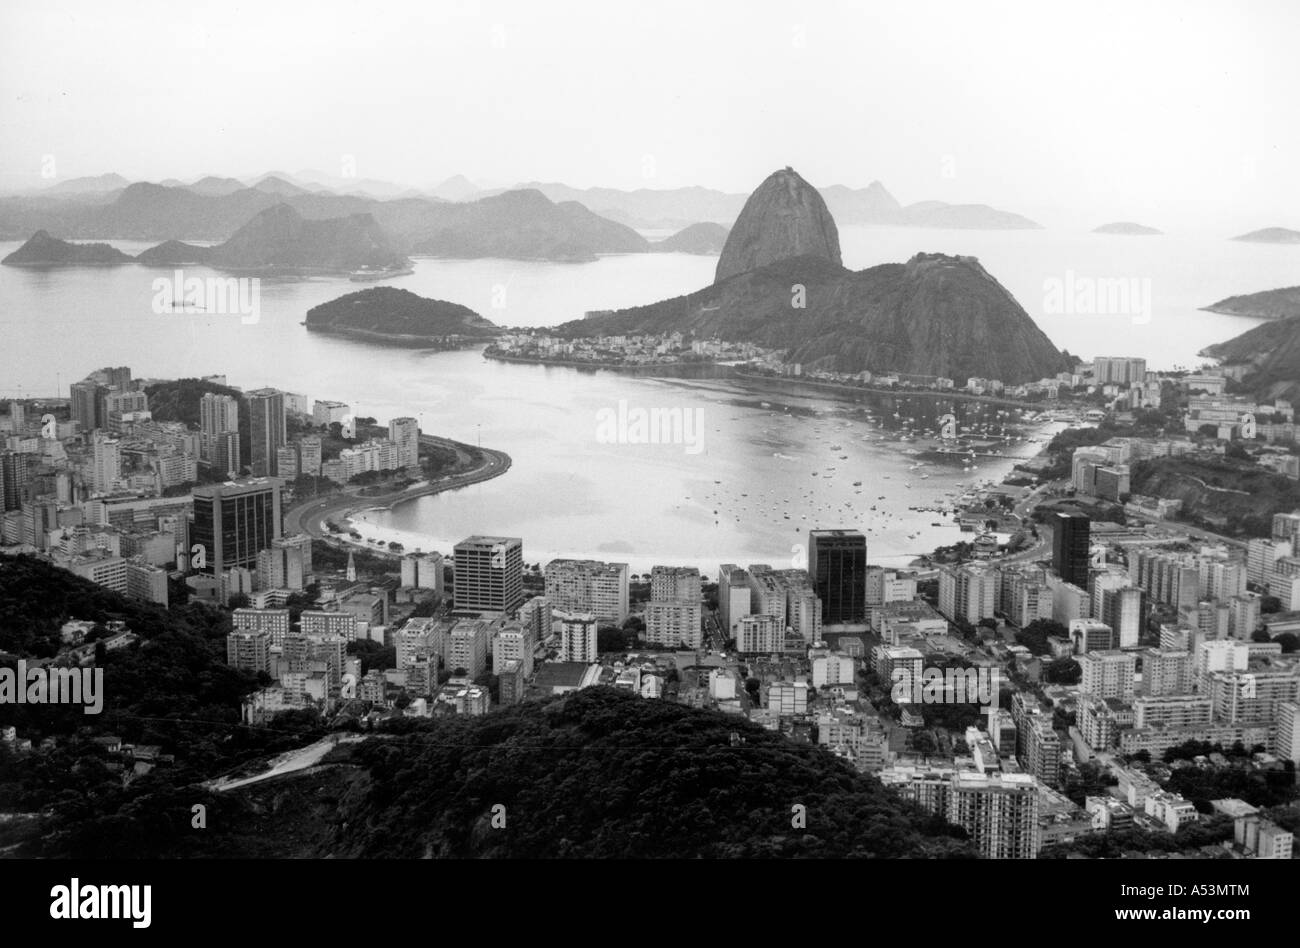 Painet1462 293 hectáreas de paisaje en blanco y negro en Río de Janeiro Brasil país menos desarrollado económicamente desarrollando la nación cultura Foto de stock